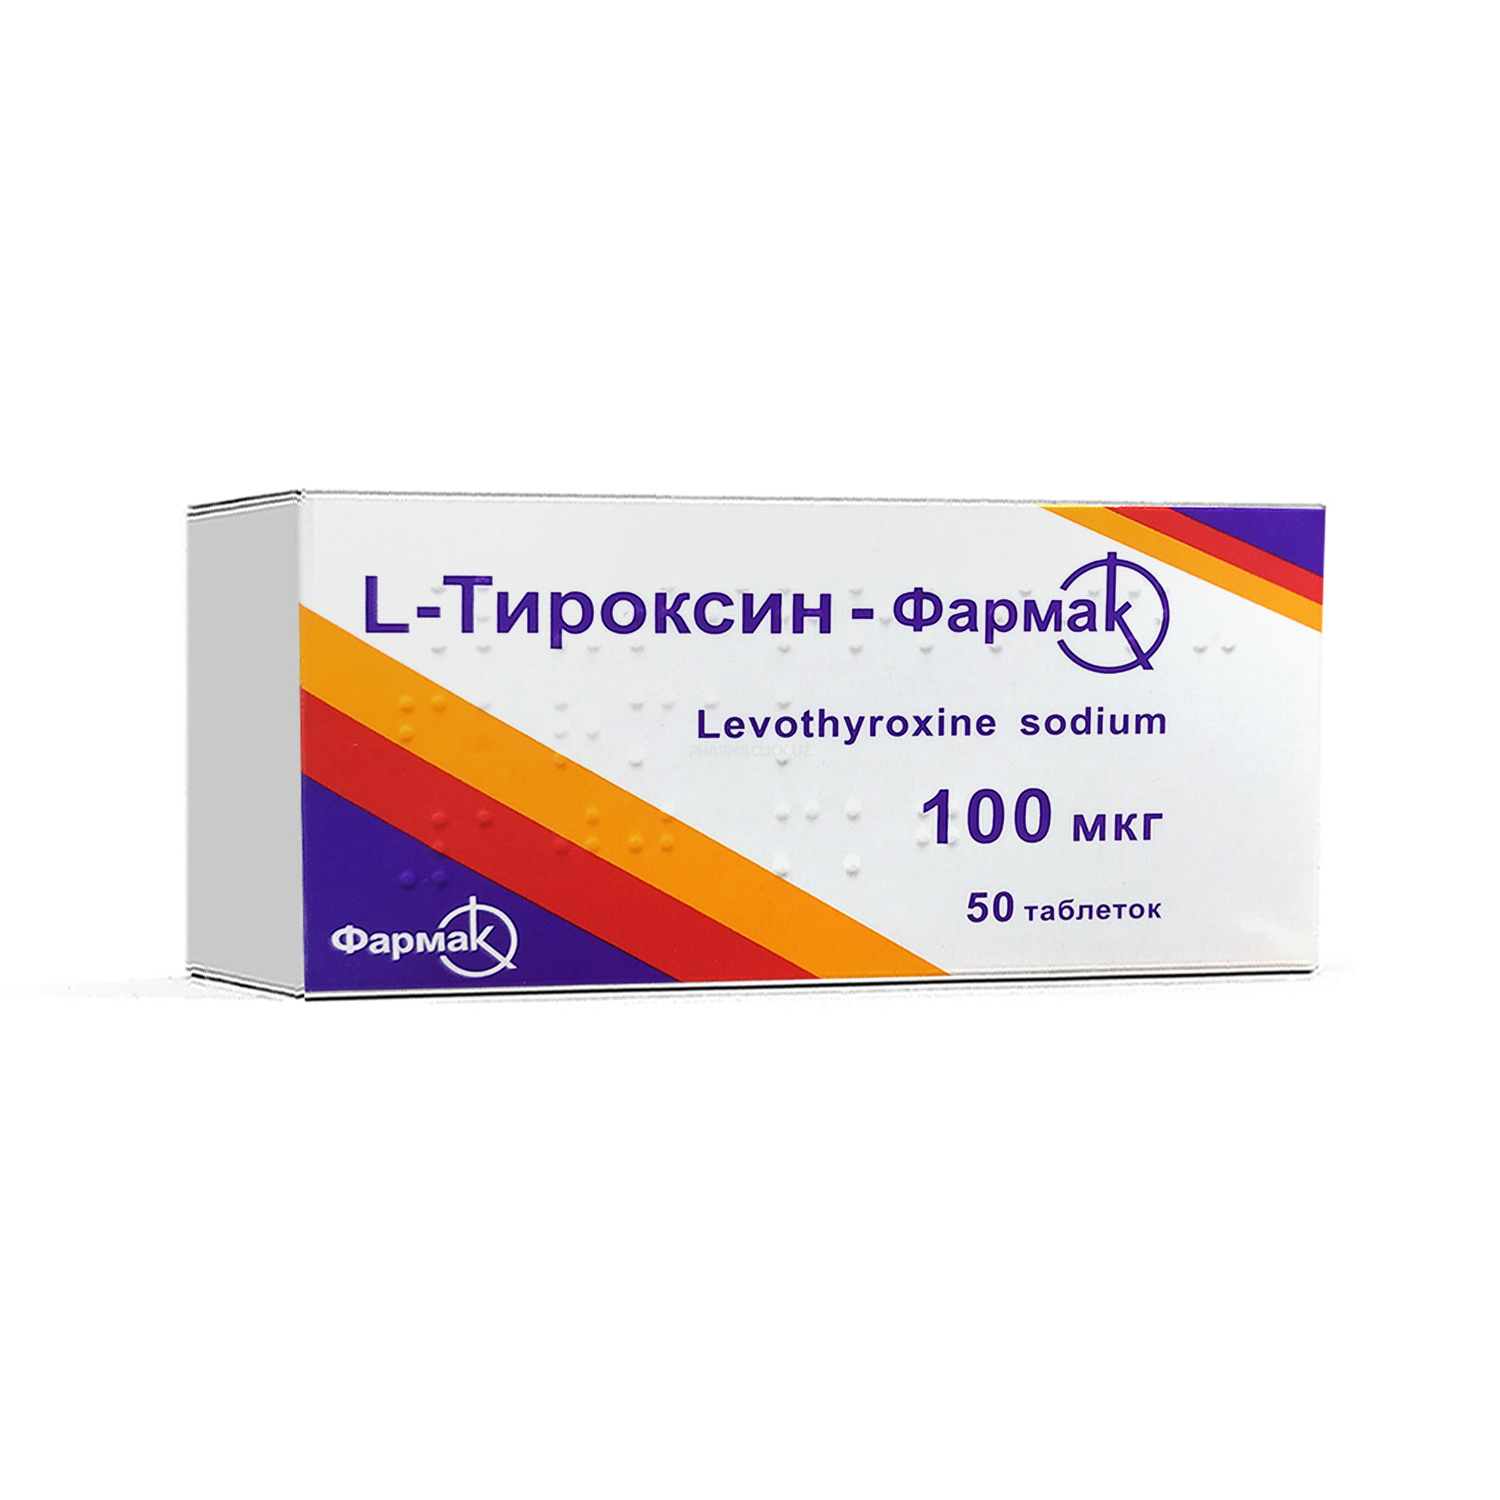 L-Tiroksin tab. 100 mg №50 (Farmak)